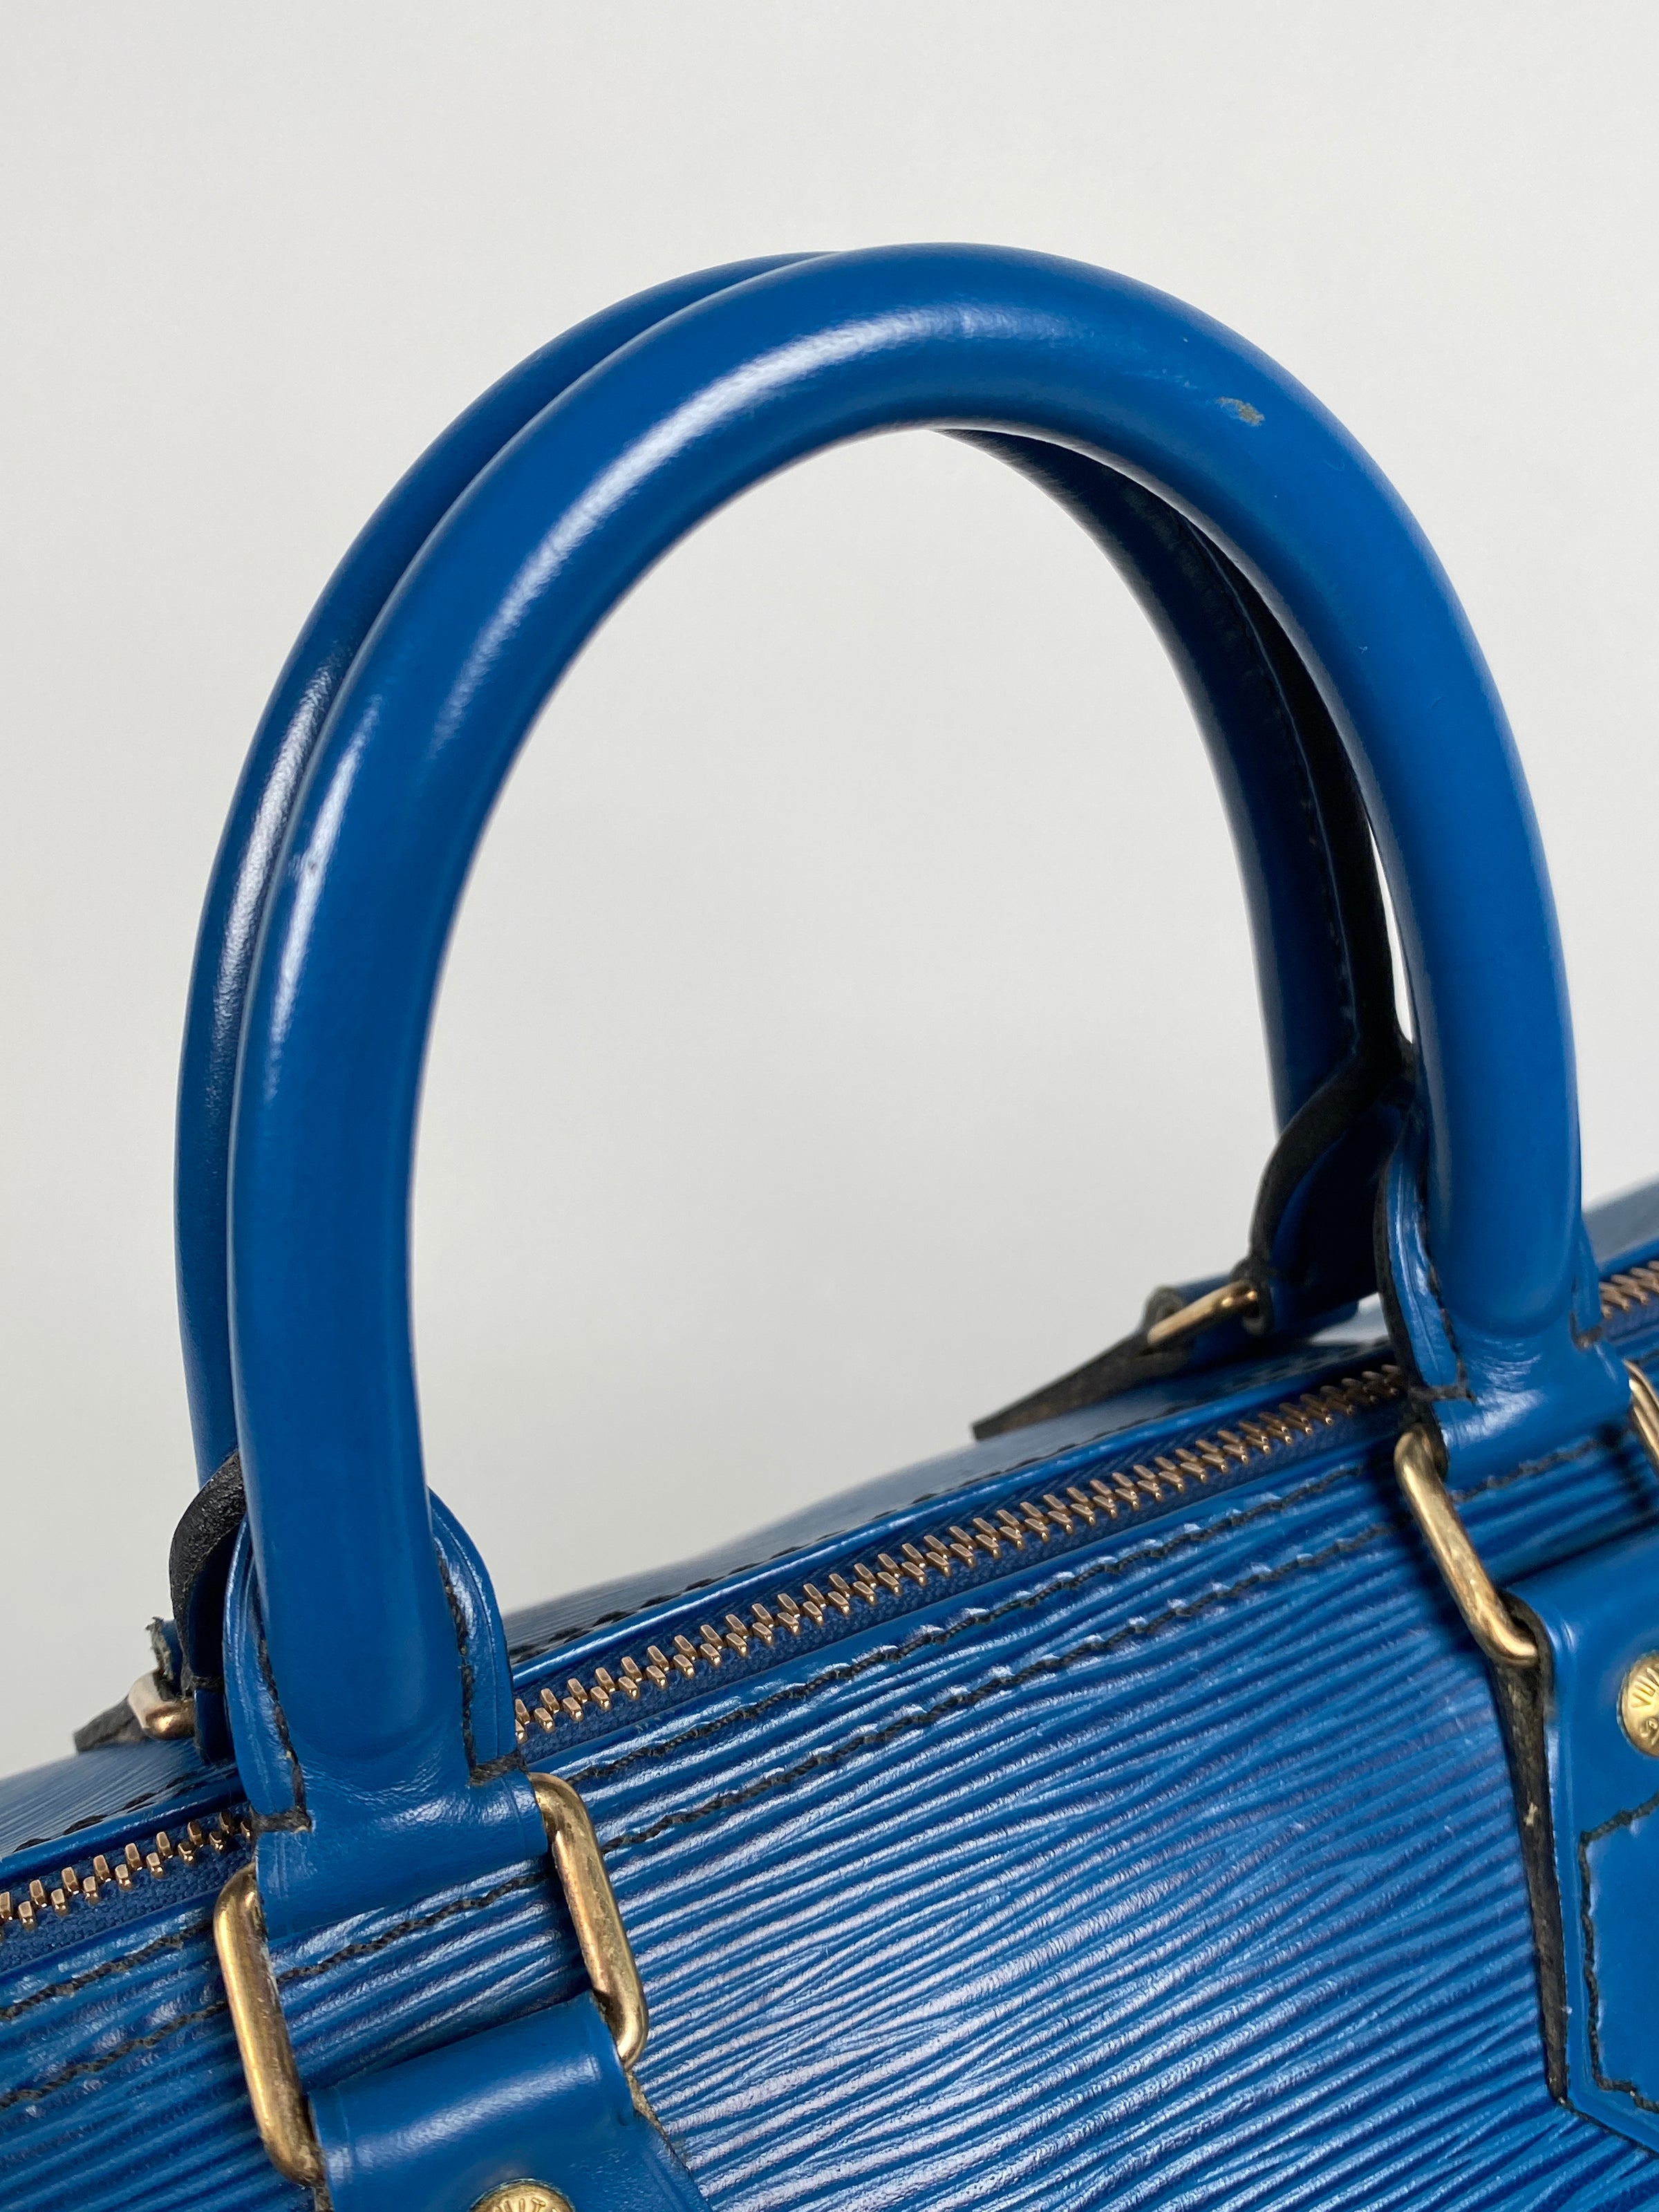 Louis Vuitton Epi Speedy 30 M43005 Blue Leather Pony-style